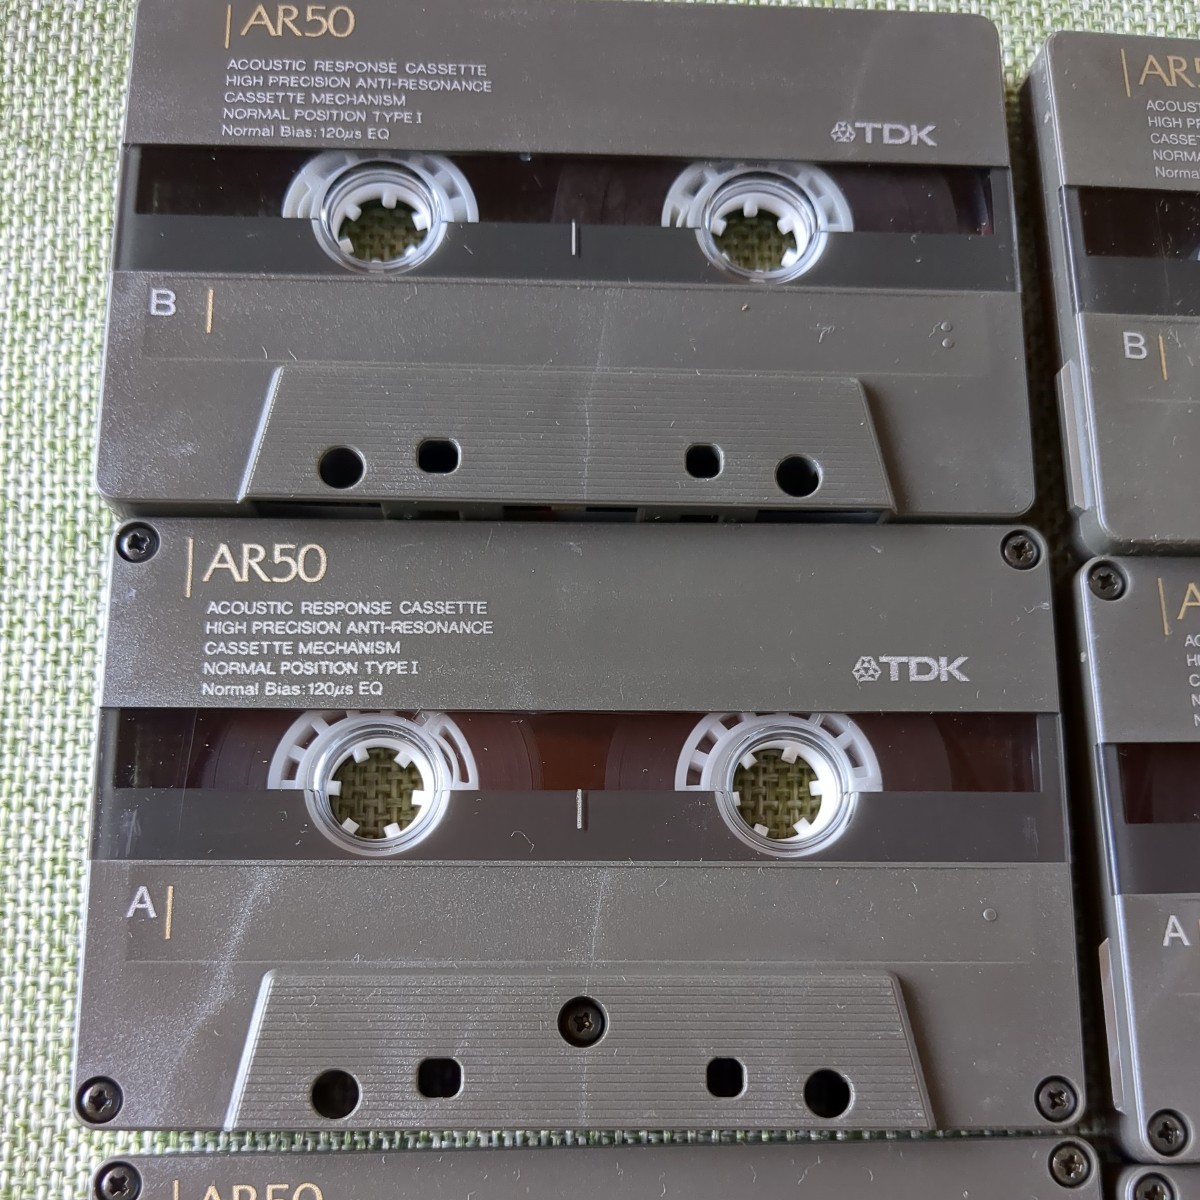 ジャンク TDK 使用済み カセットテープ AR 50 計8本 当時物 昭和レトロ ノーマルポジション JChere雅虎拍卖代购